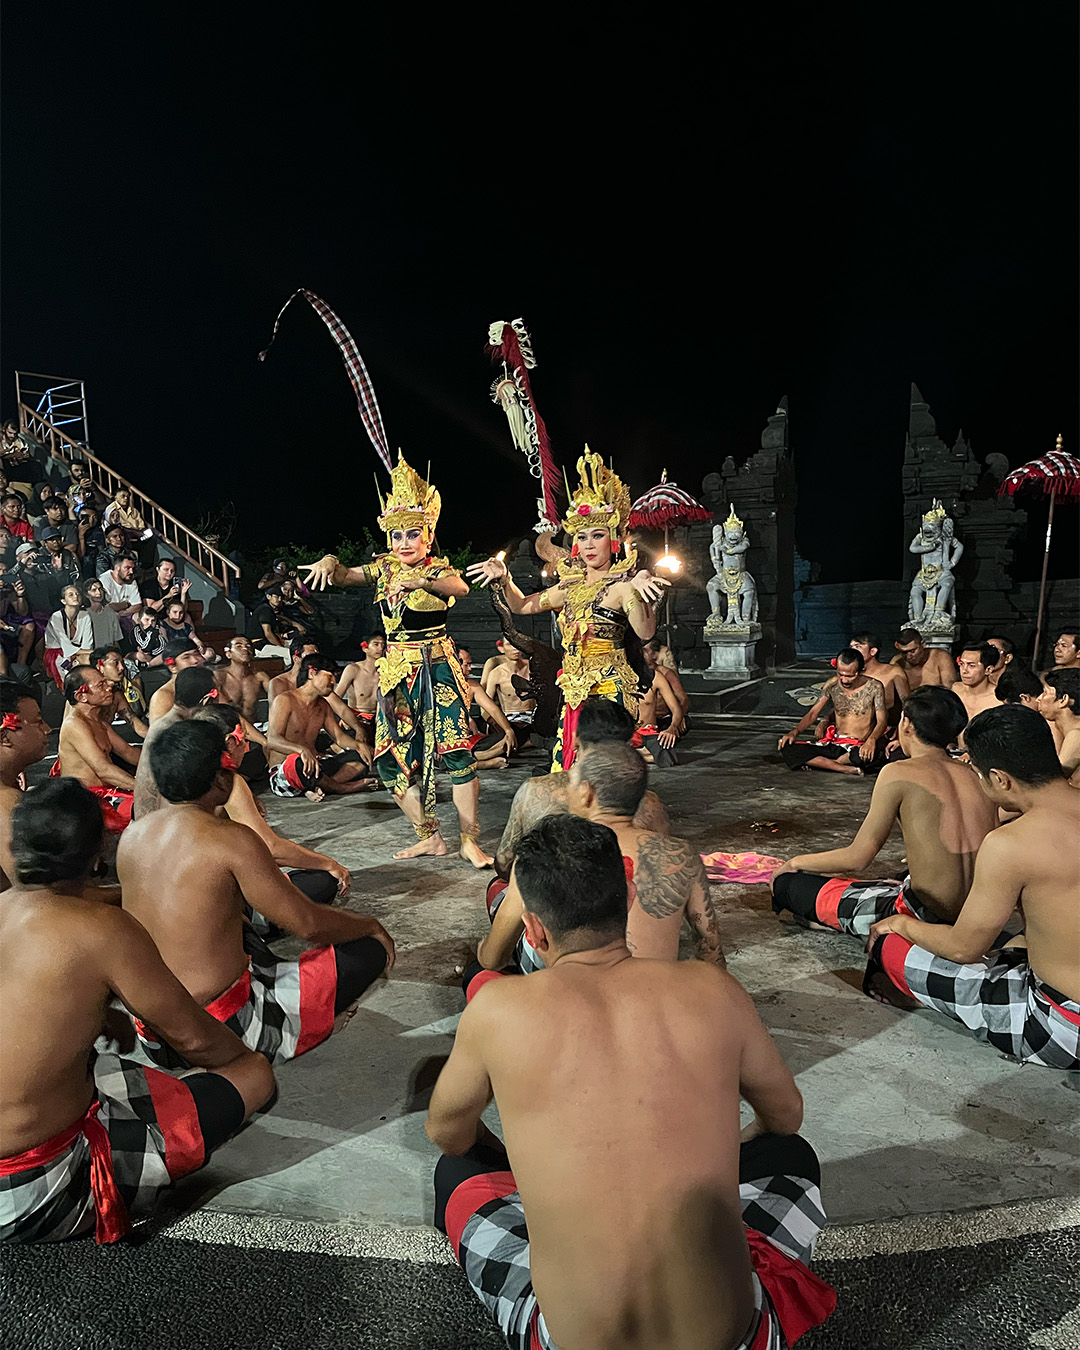 Cultural dance in Bali